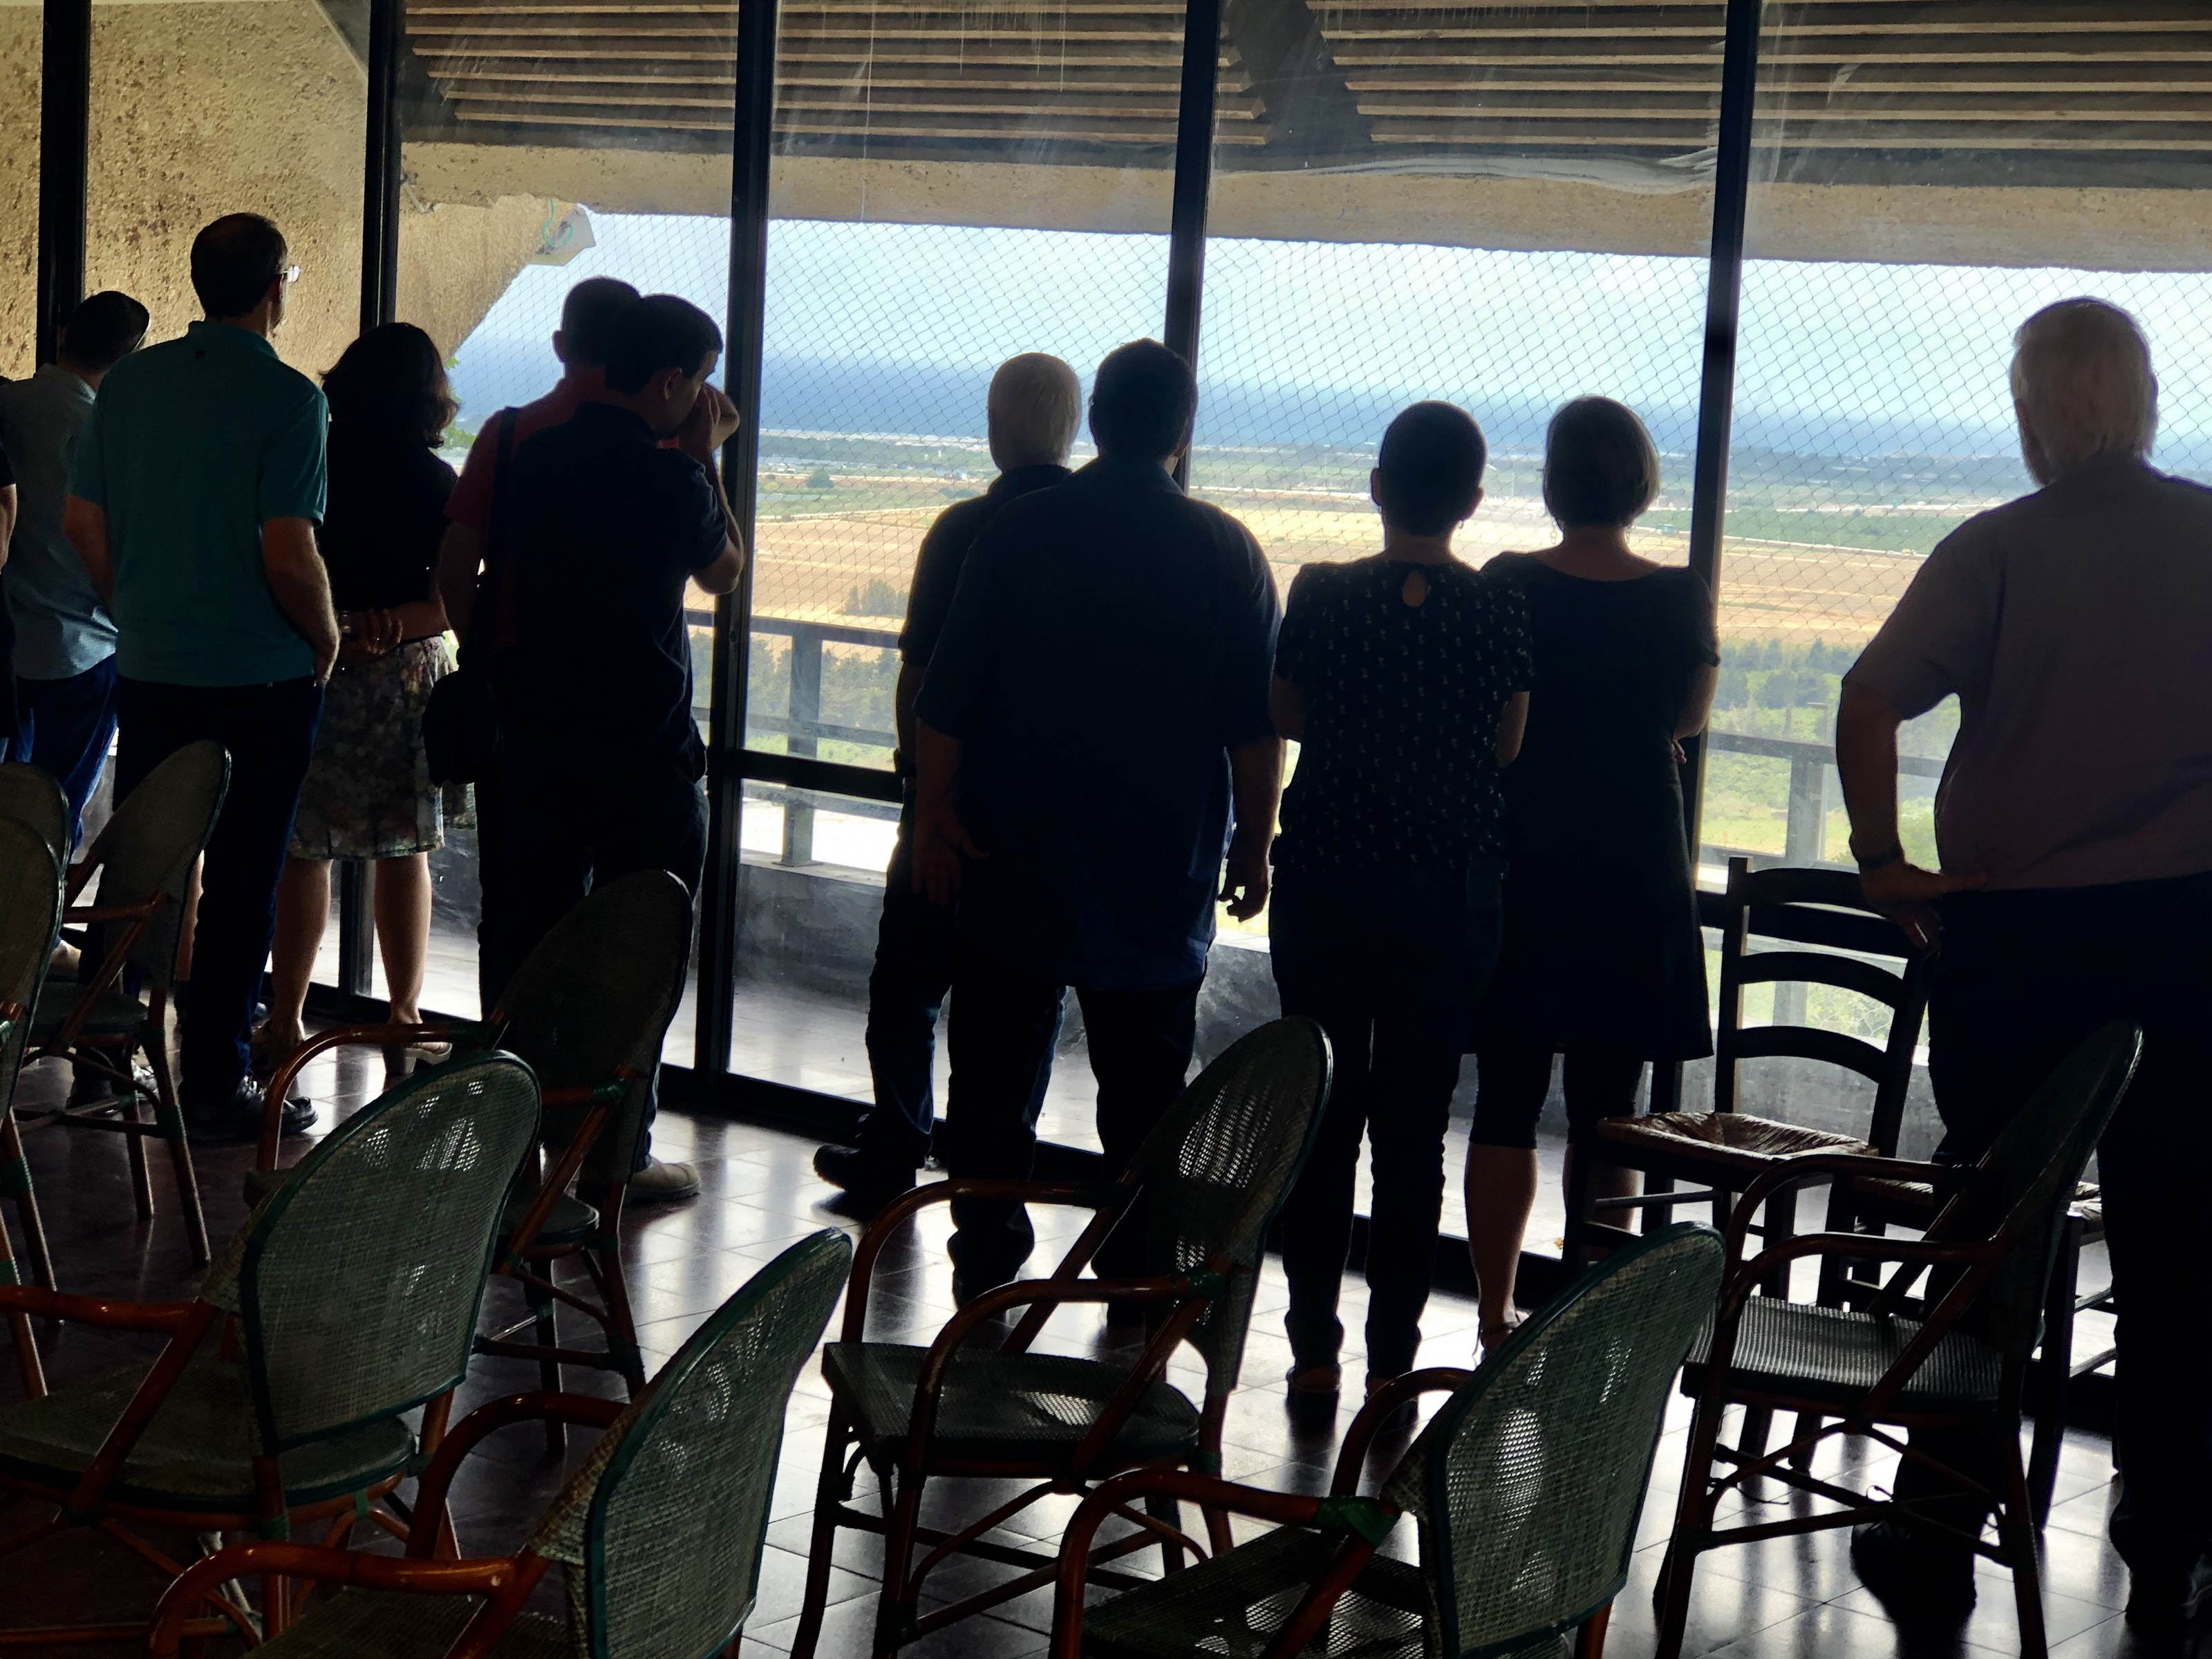 חברי המטה צופים מחלונות חדר האוכל על הנוף הנפרש למרגלות הכרמל